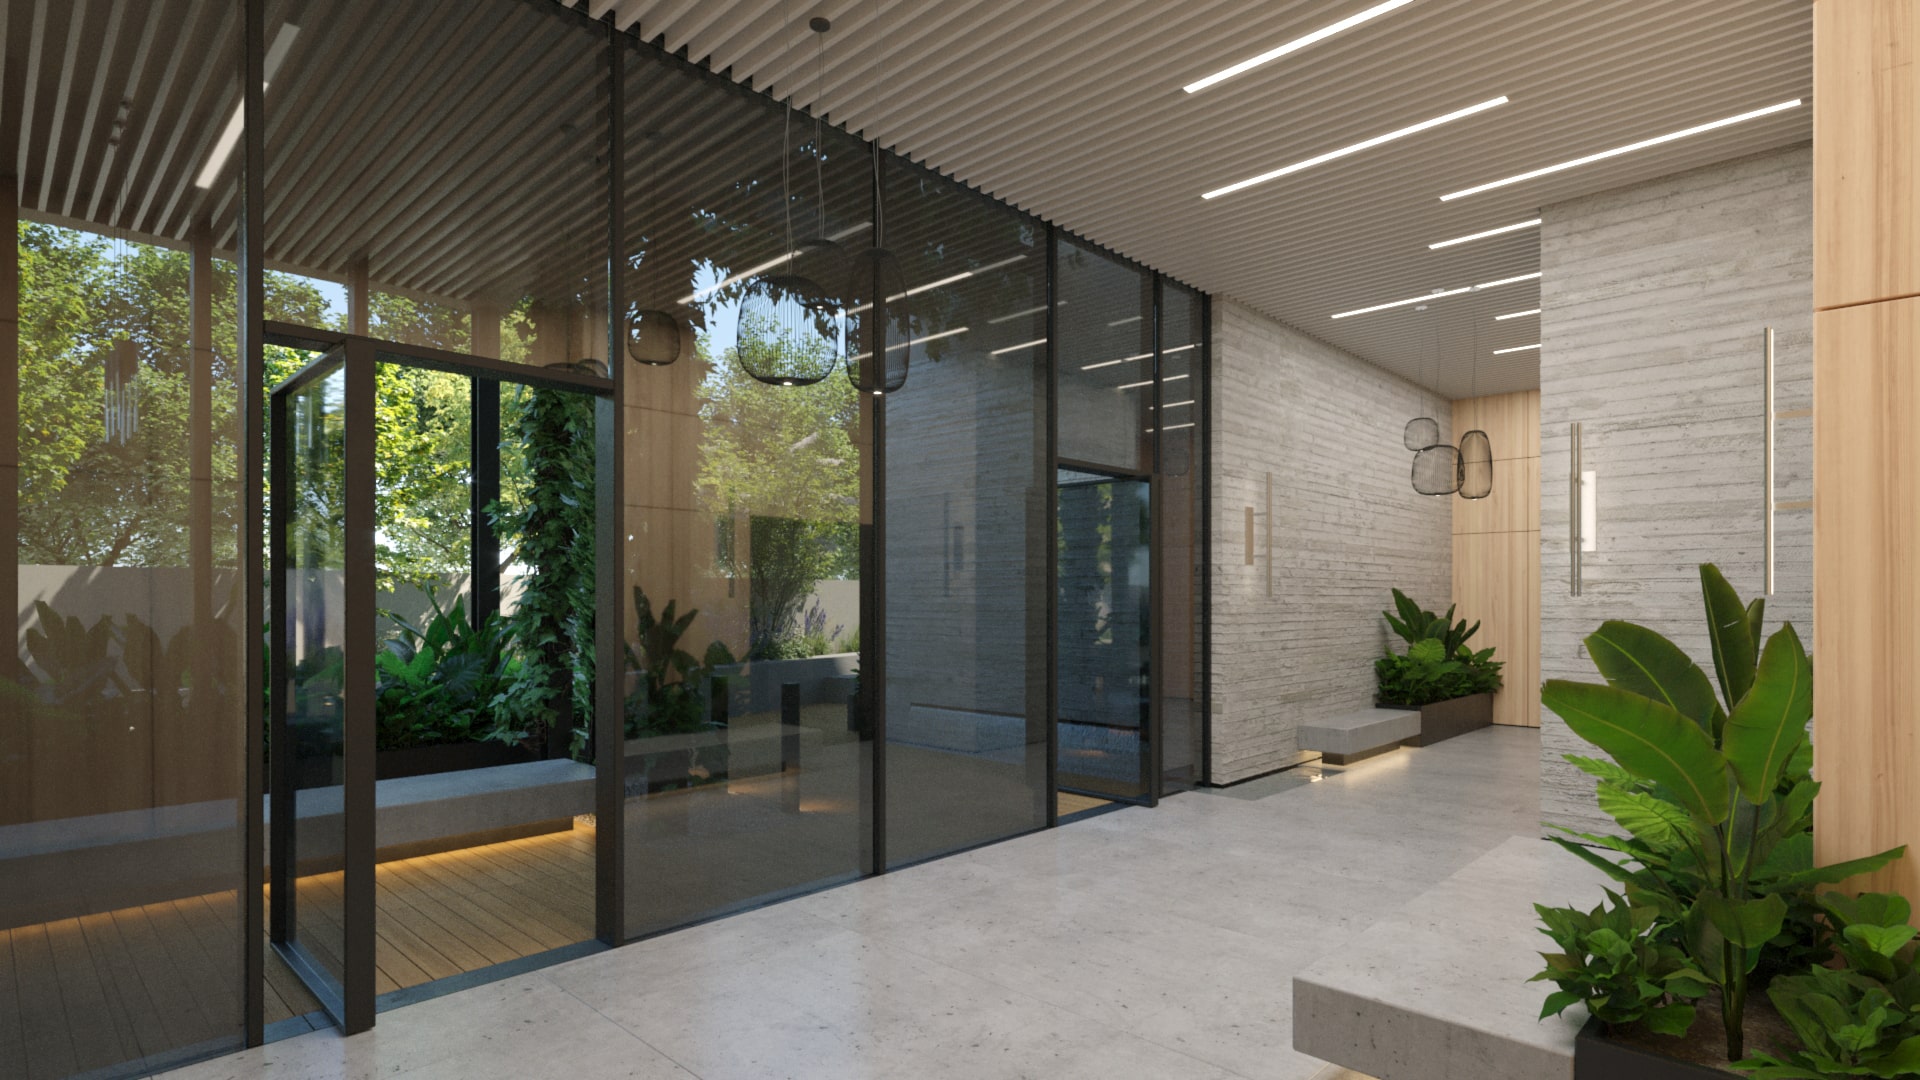 תמונה המציגה את הלובי של הפרויקט הכולל רצפת שיש, חלונות זכוכית גדולים וצמחיה.